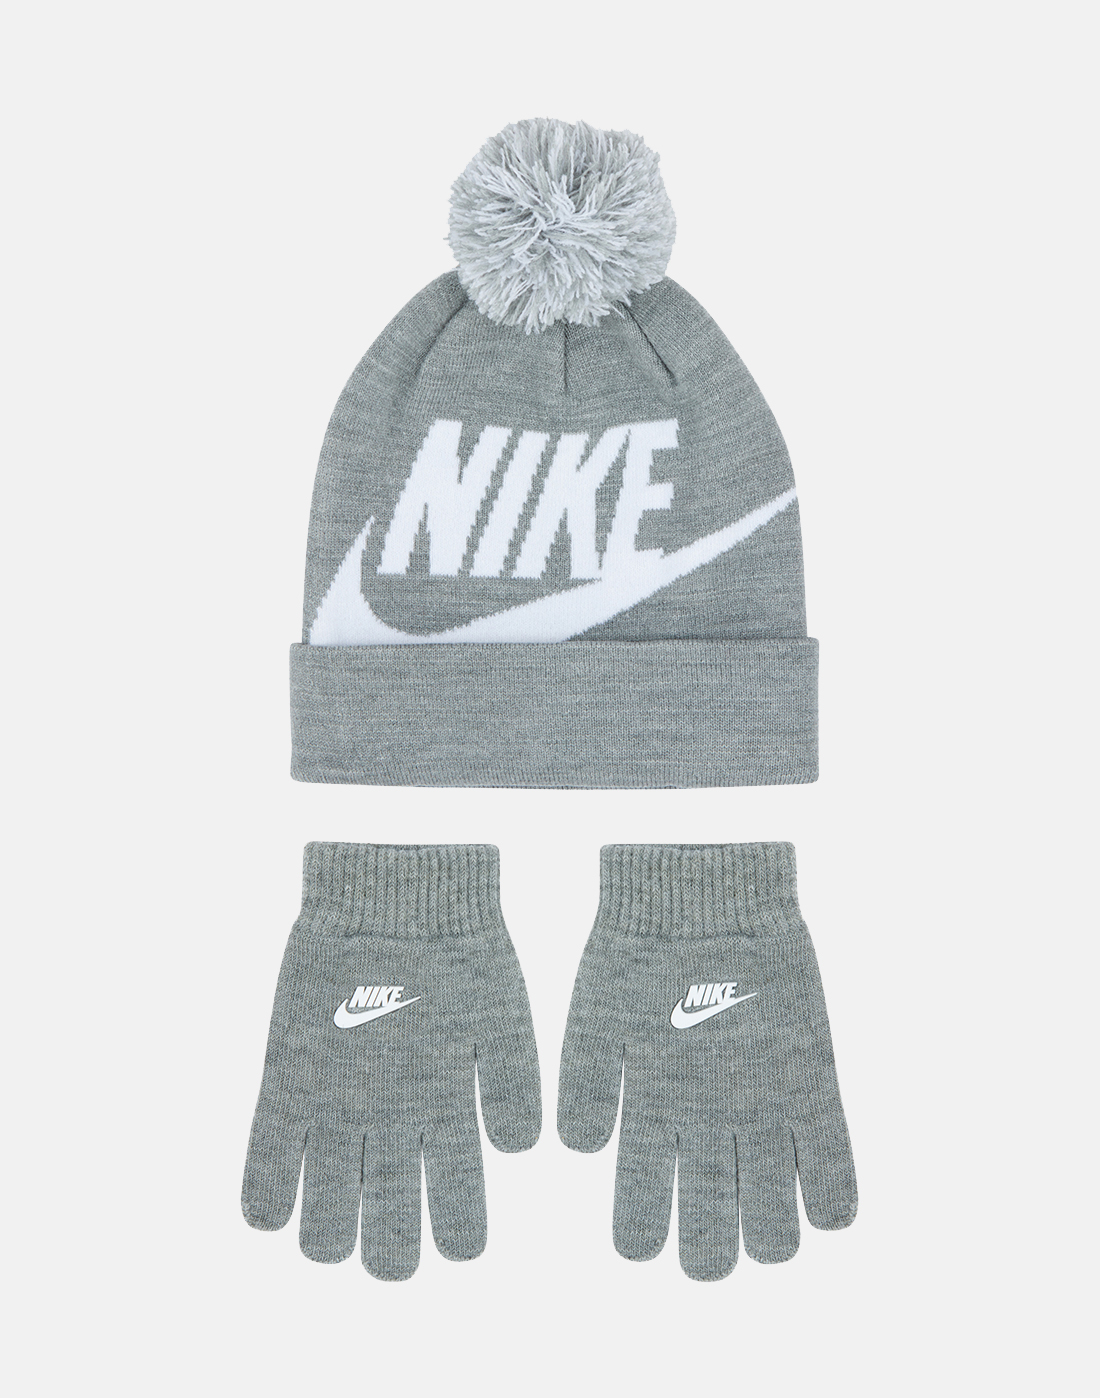 Nike Preschool Beanie and Glove Set - Grey | Life Style Sports UK